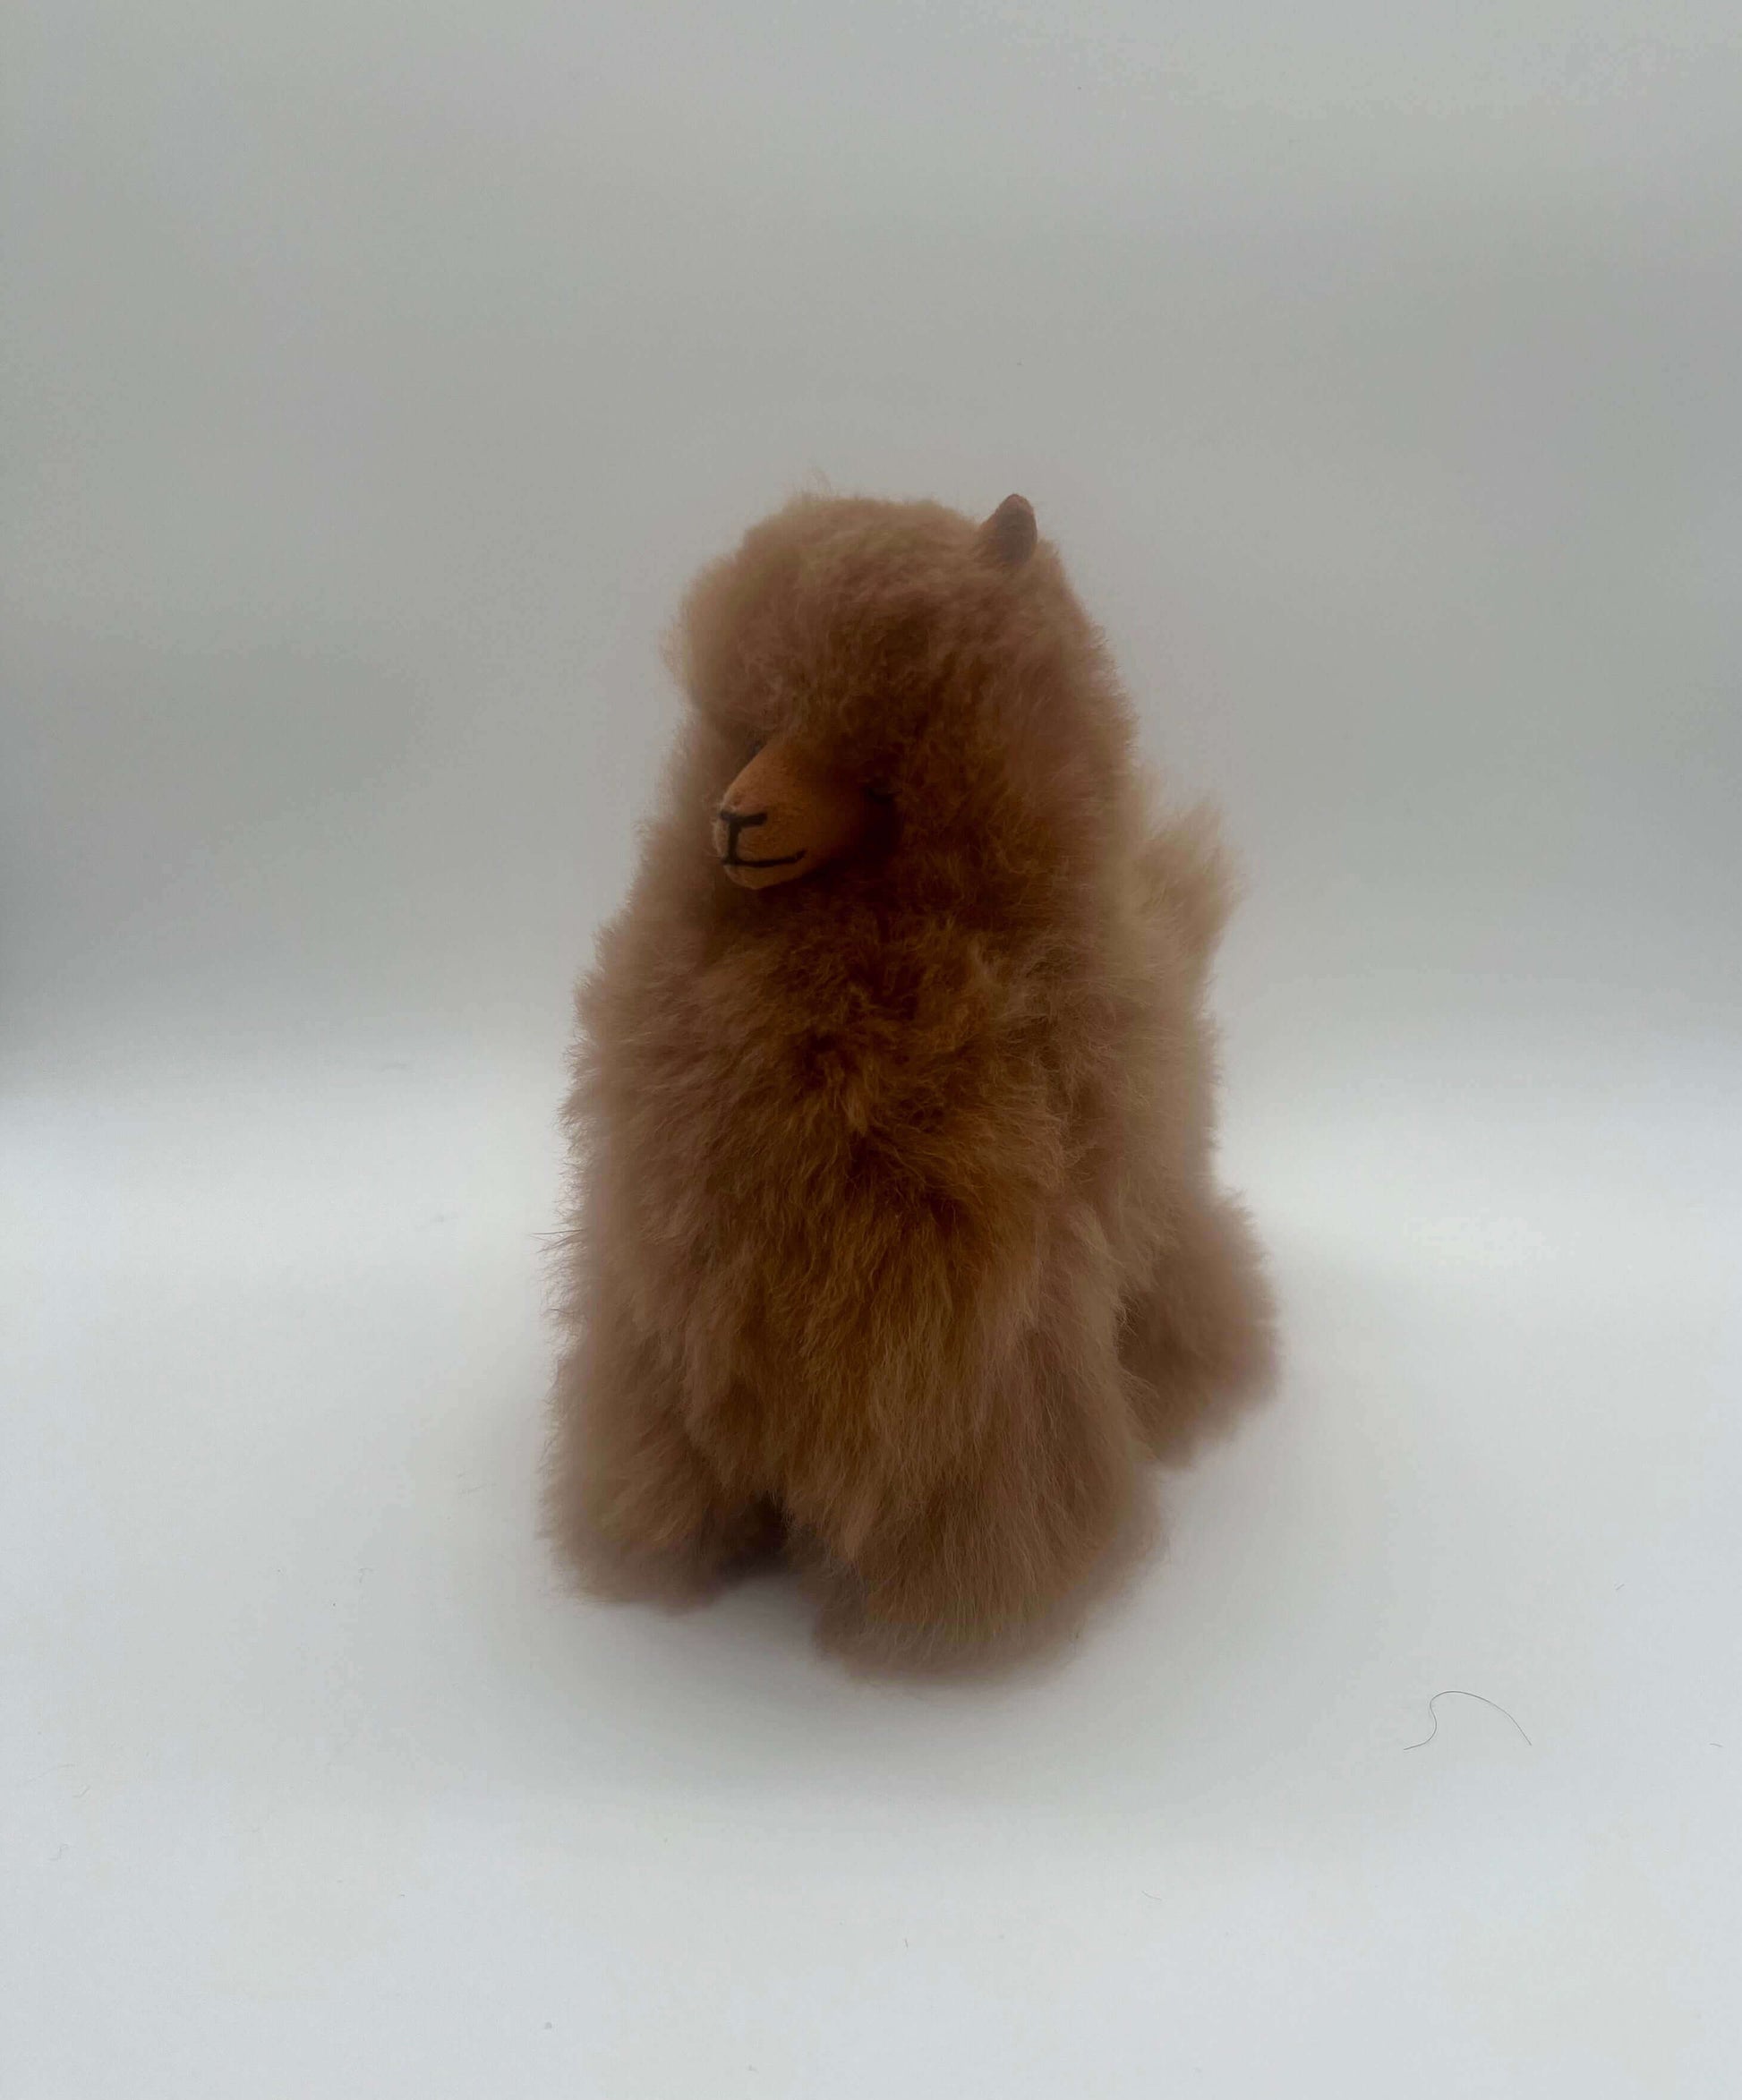 Kuscheliges Alpaka Plüschspielzeug in zwei Brauntönen, aus 100% Baby-Alpakawolle, perfektes Geschenk.